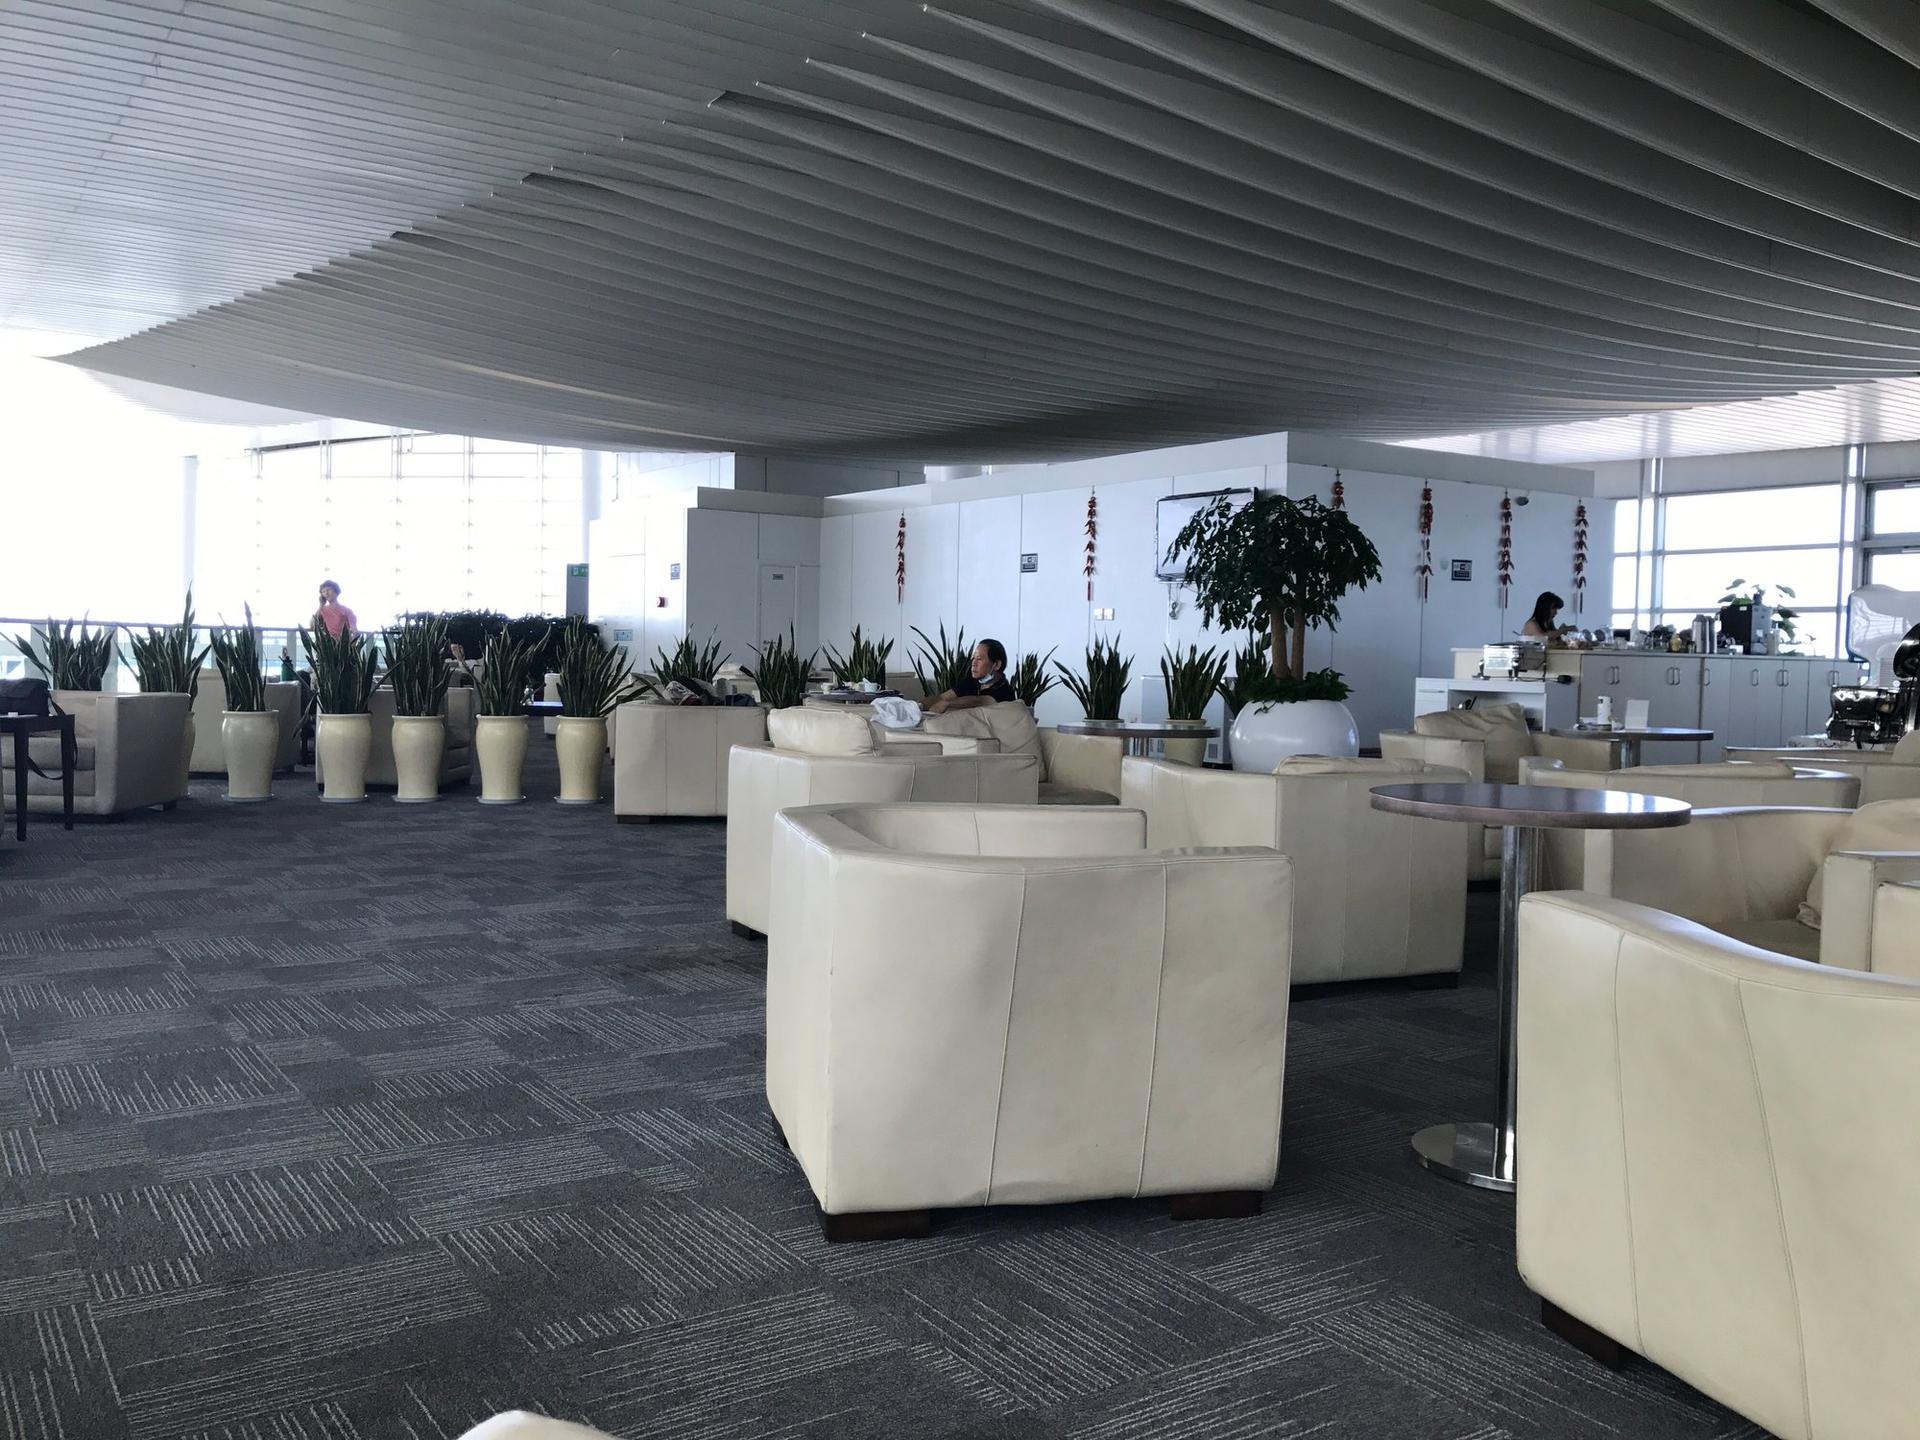 Hangzhou Xiaoshan Airport First Class Lounge image 5 of 8